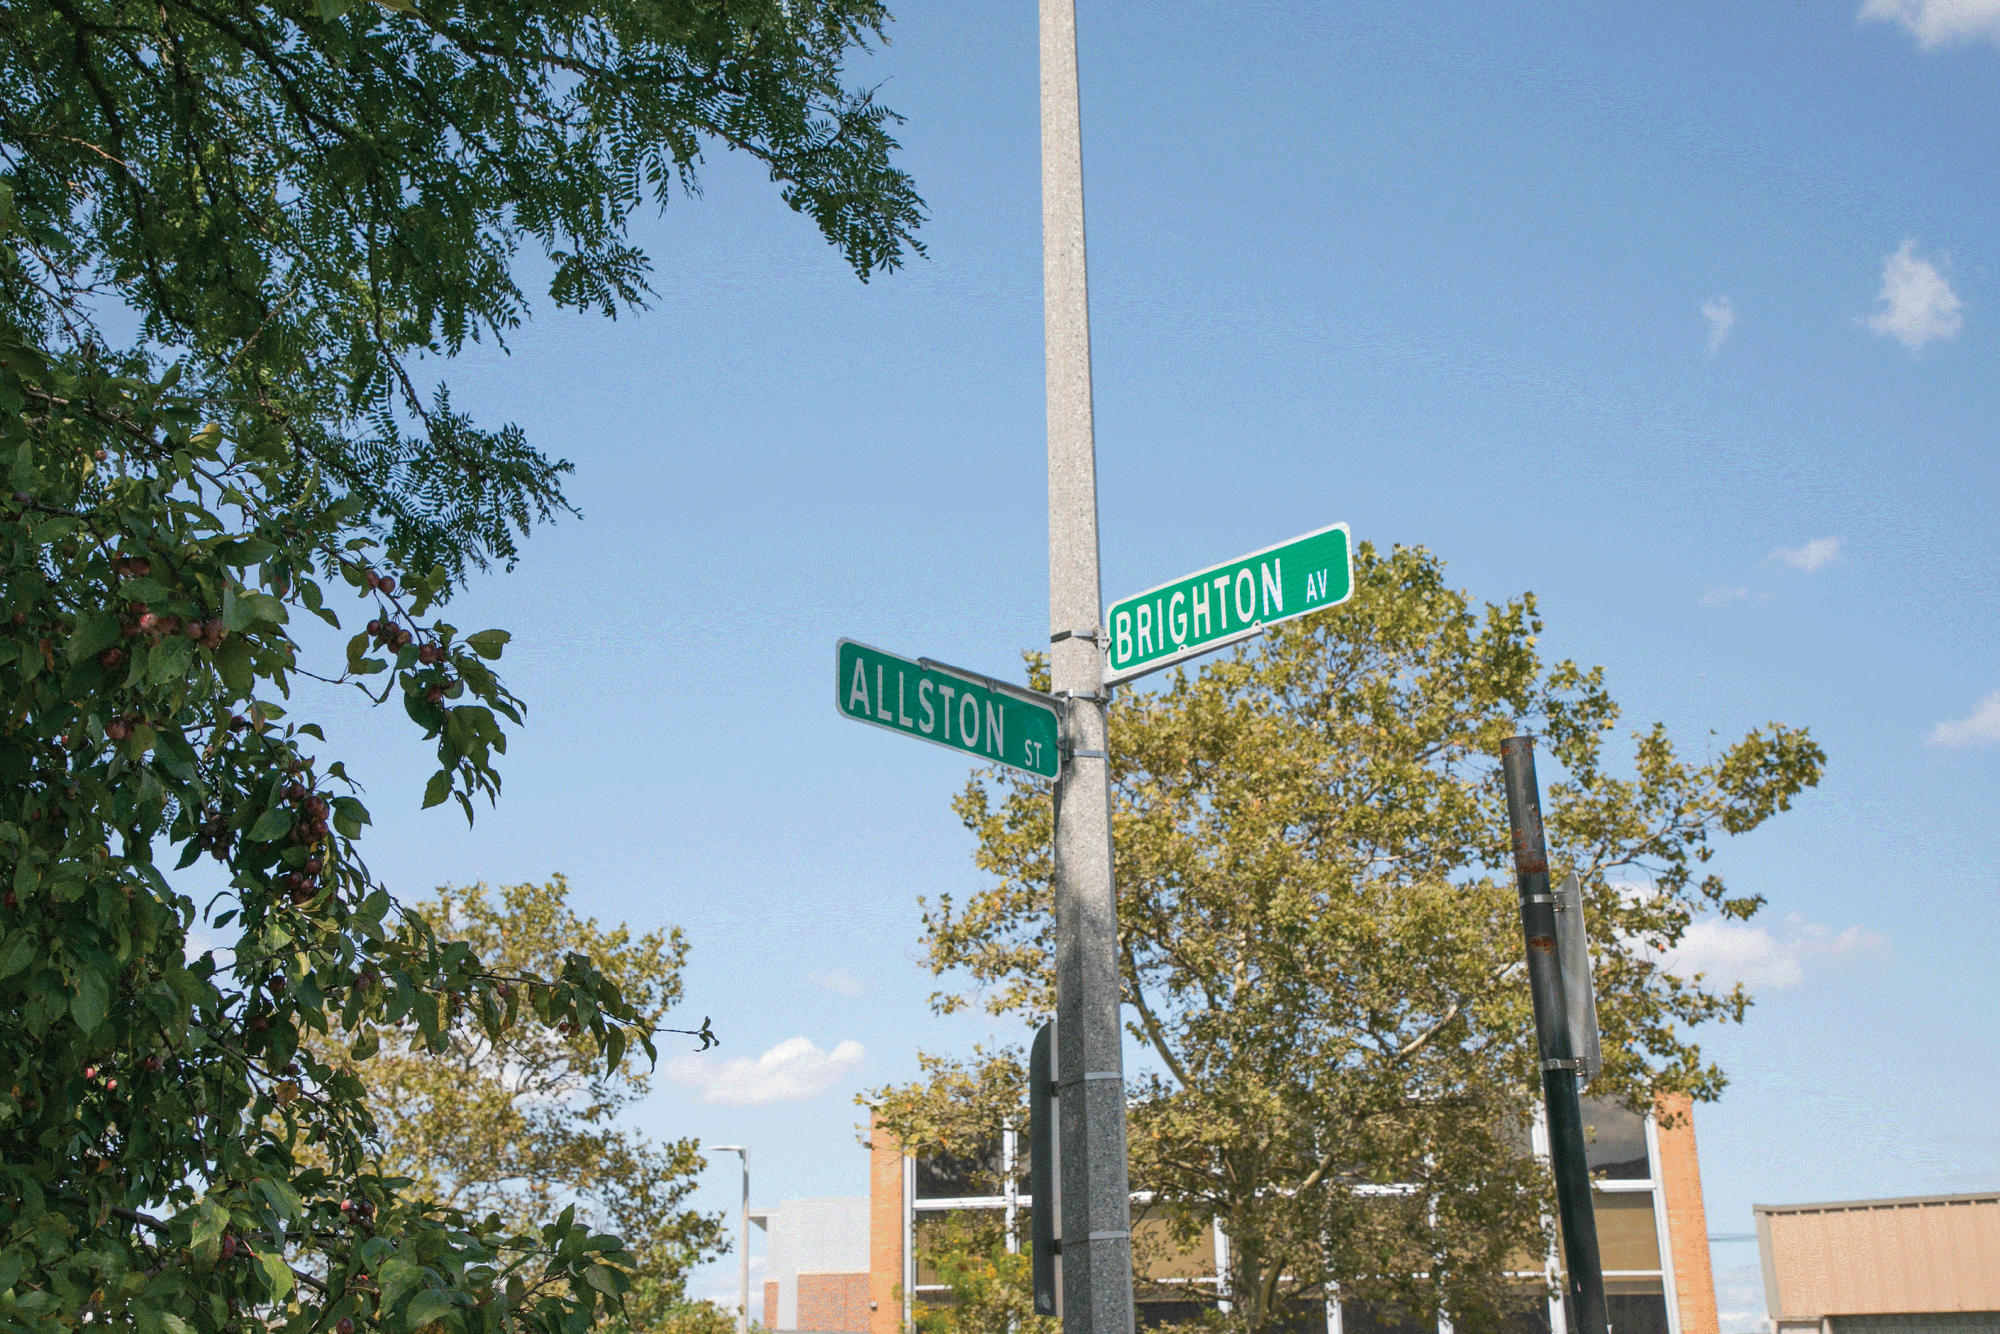 Allston-Brighton street sign